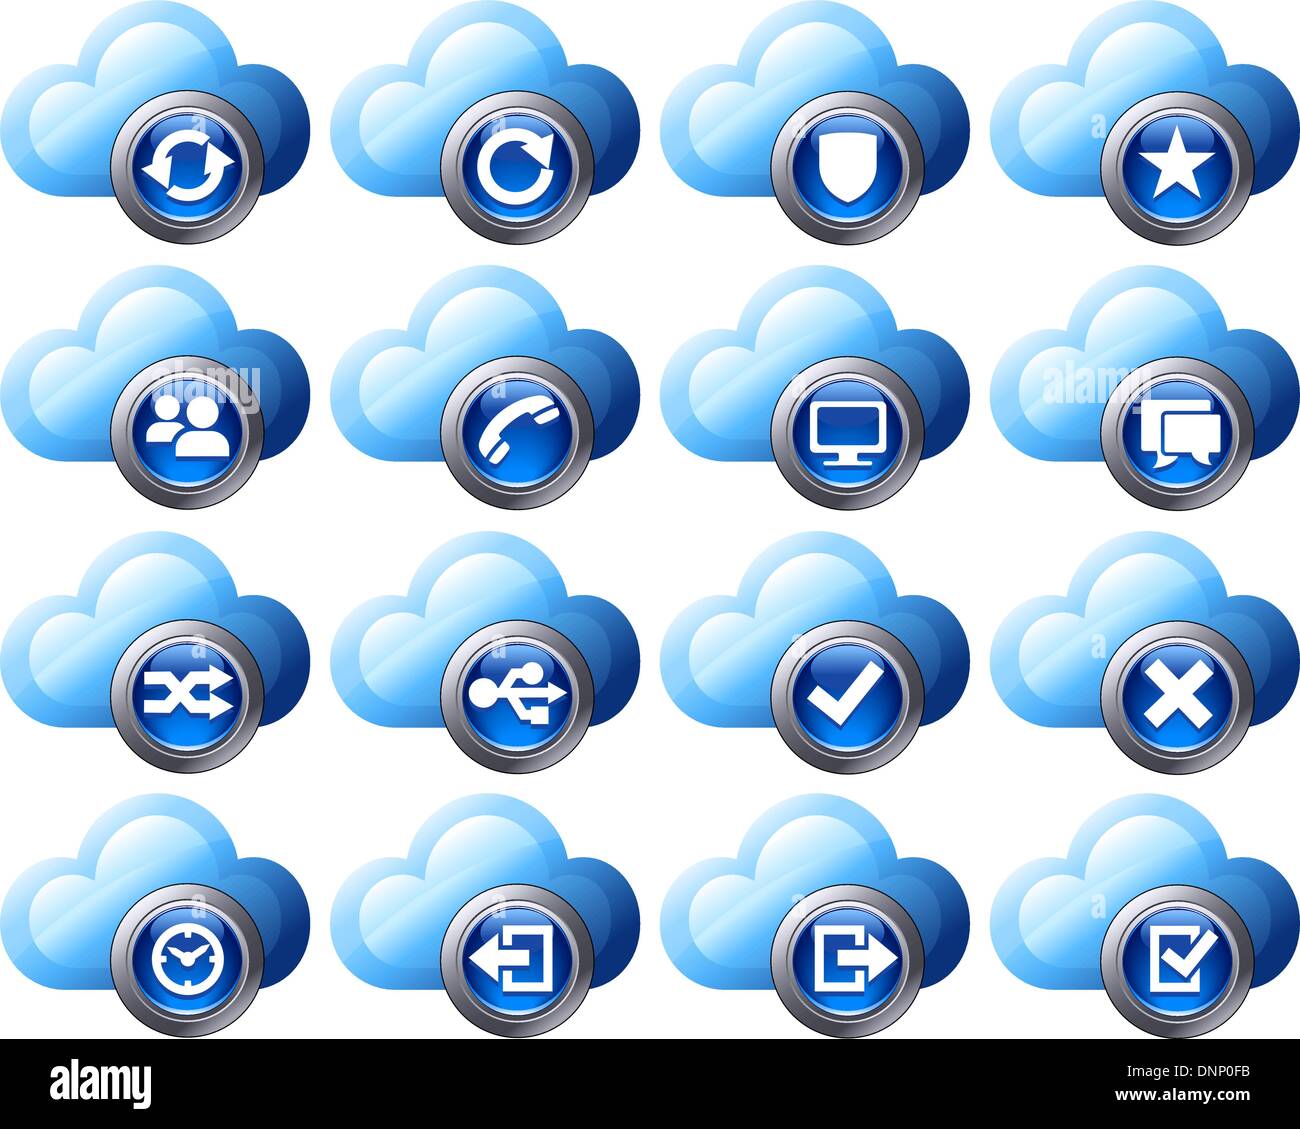 Virtuelle Cloud Symbole hochladen, herunterladen von Tasten, Telefon, Wiederherstellung, Sicherung und Computerdateien und digitale Medien zu speichern Stock Vektor